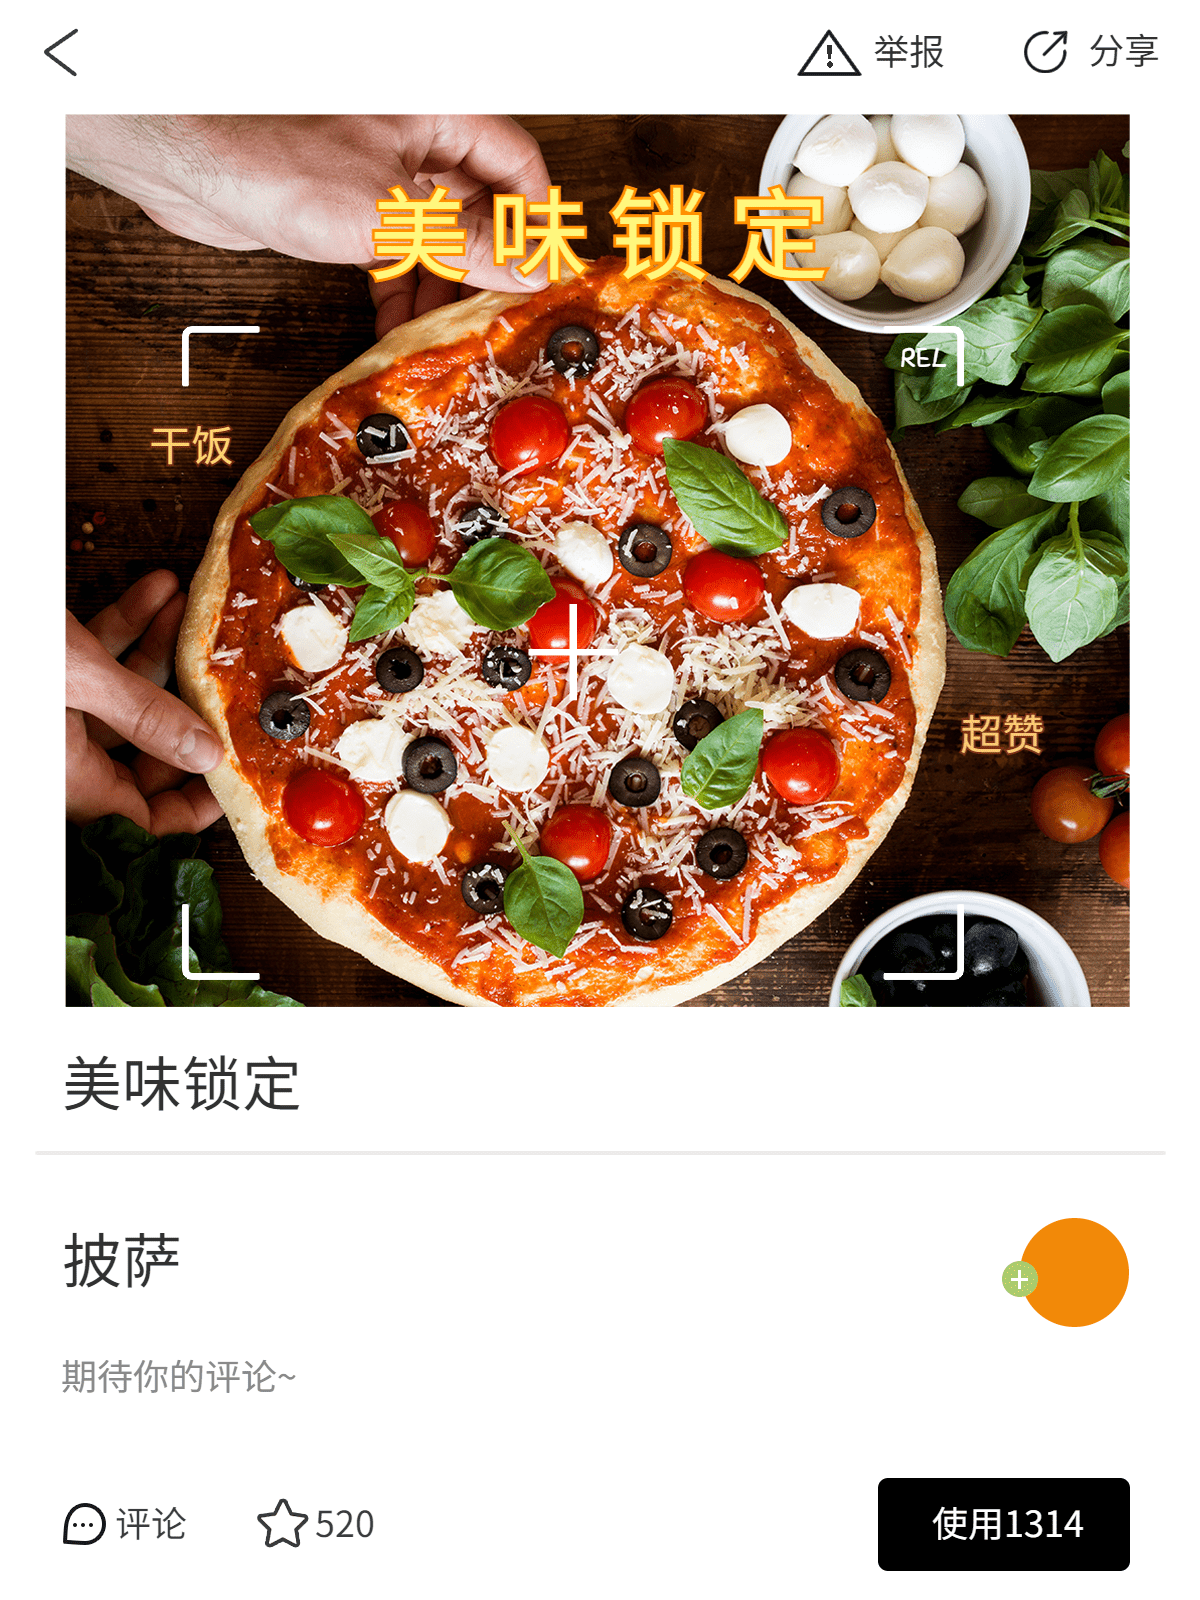 美食分享披萨界面风plog模板预览效果